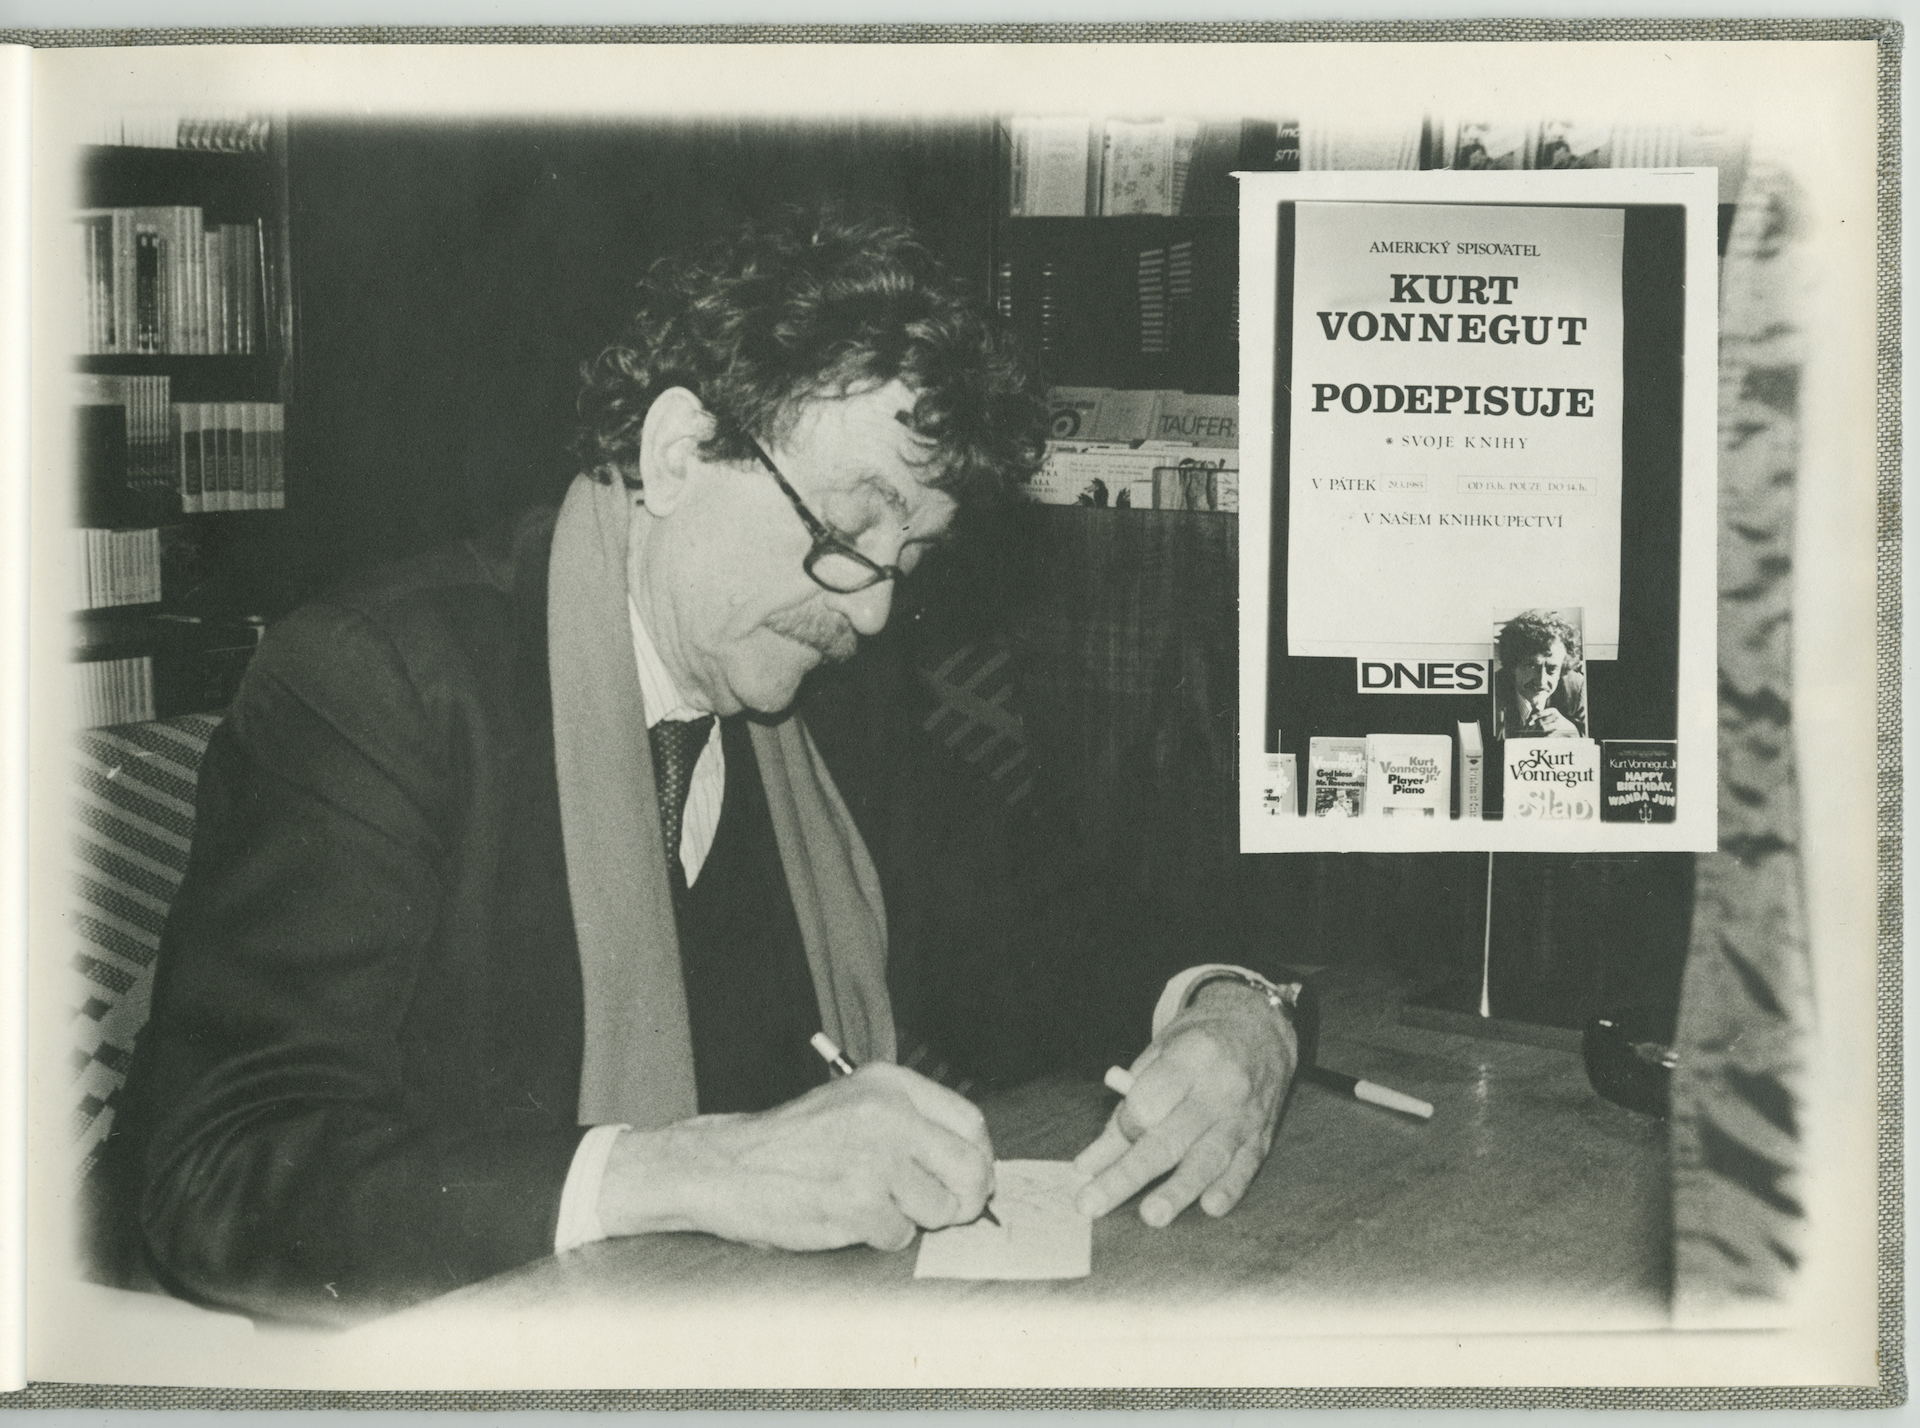 Private album of photographs depicting Kurt Vonnegut’s visit to Prague in 1985.